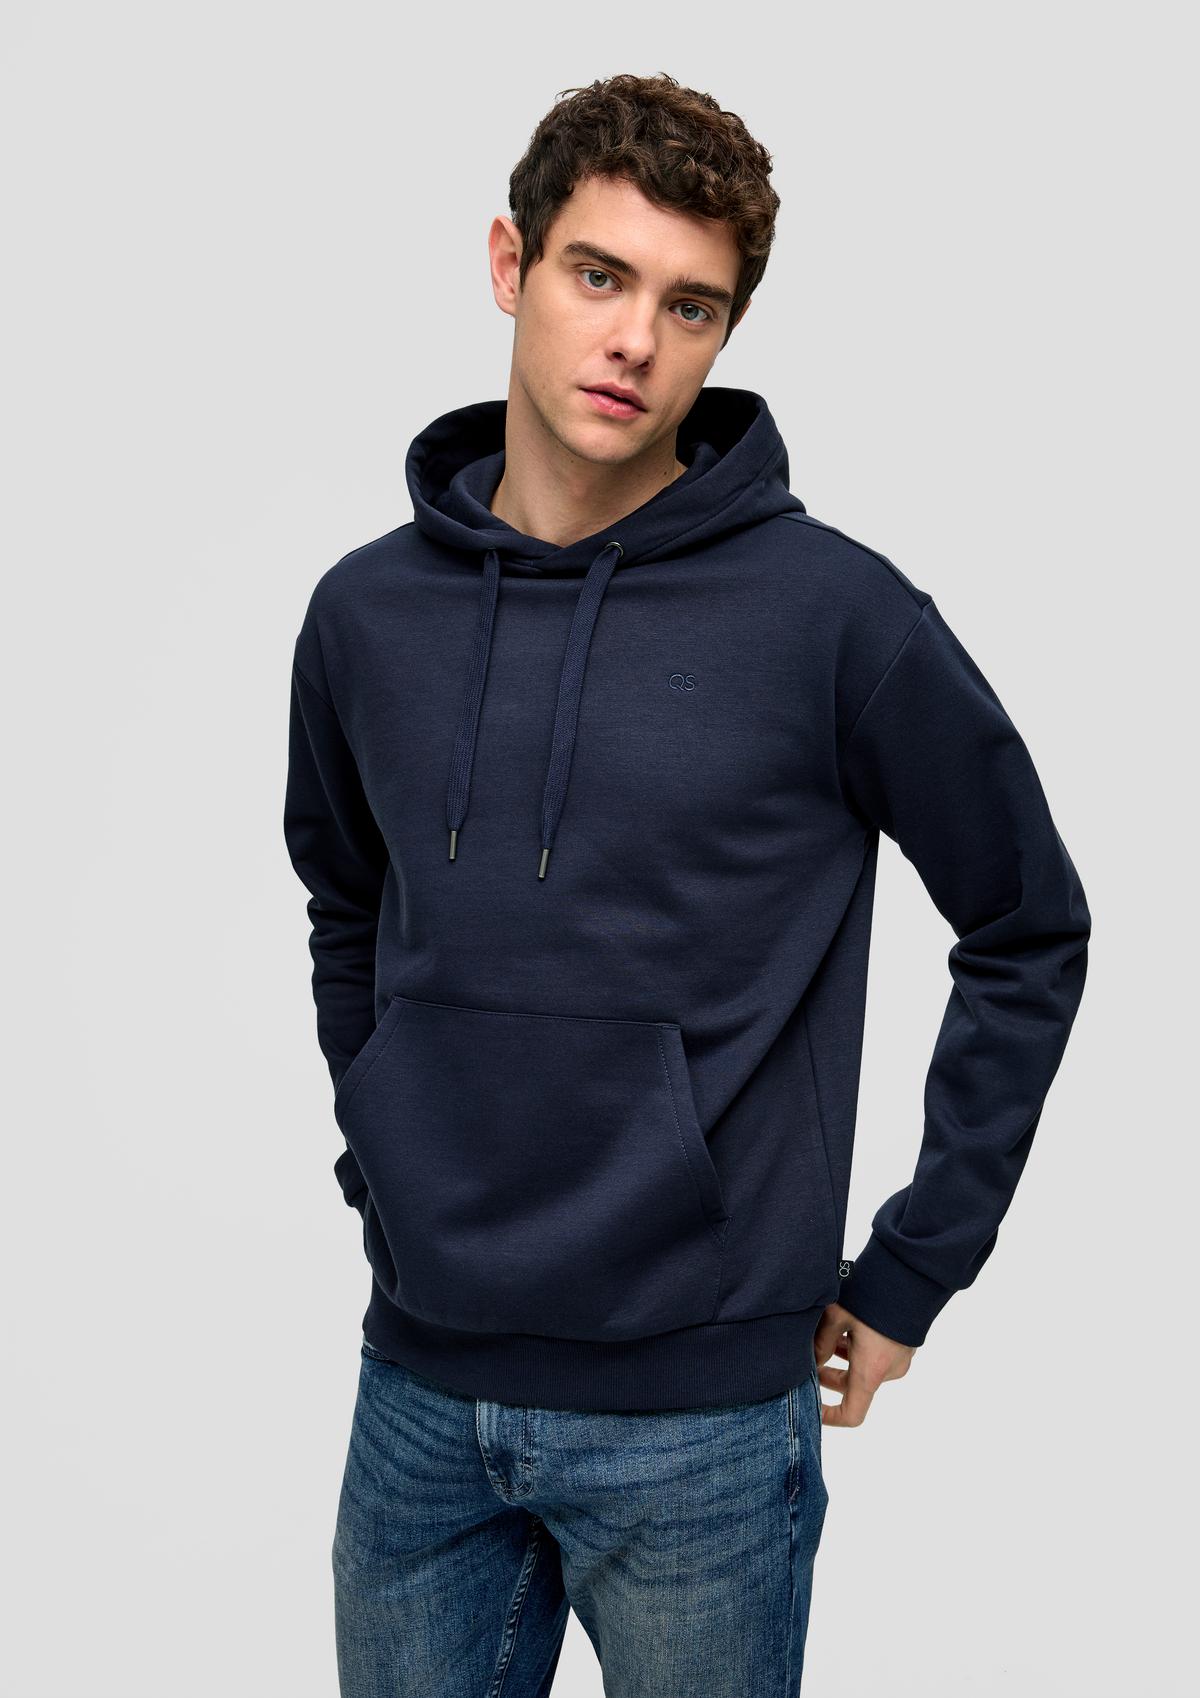 Sweatshirts & Hoodies for Men | s.Oliver